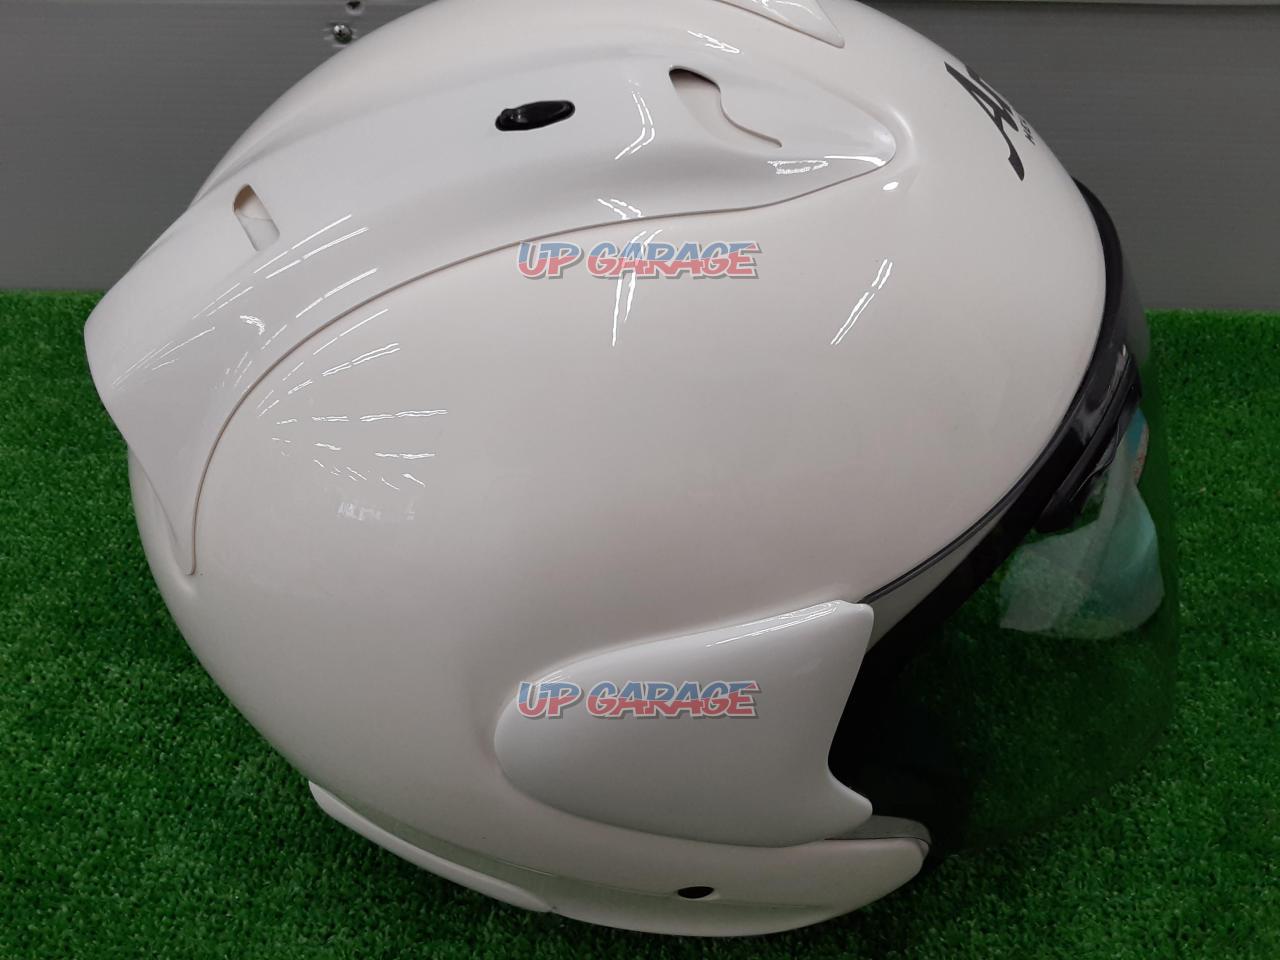 Arai アライ SZ-Ram3 SZ-RamⅢ ホワイト ジェットヘルメットアライのヘルメットになります